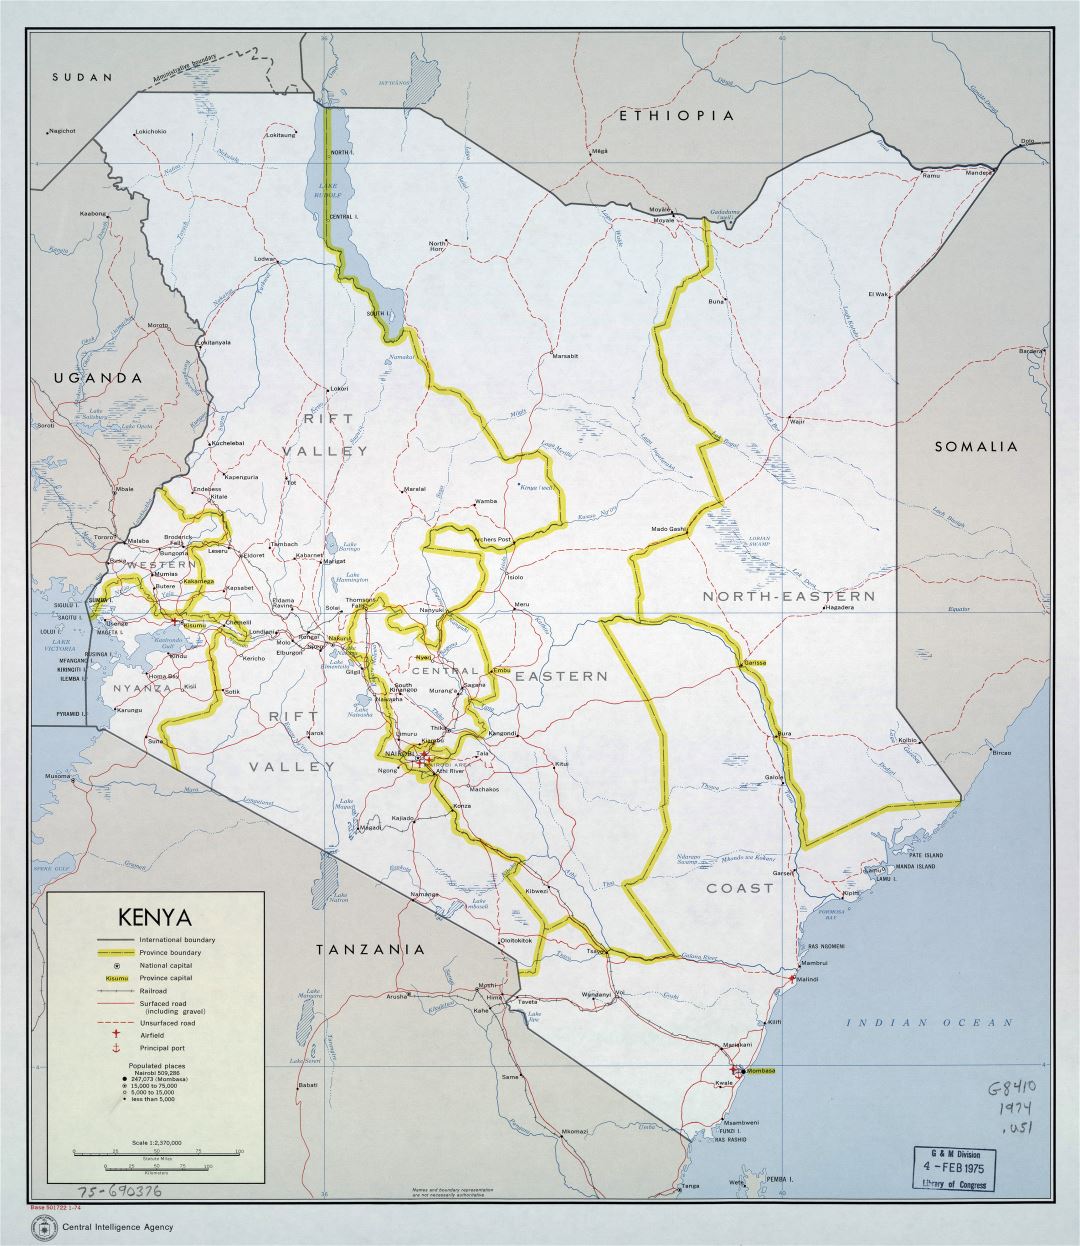 Большая детальная политическая и административная карта Кении с дорогами, железными дорогами, городами, портами и аэропортами - 1974